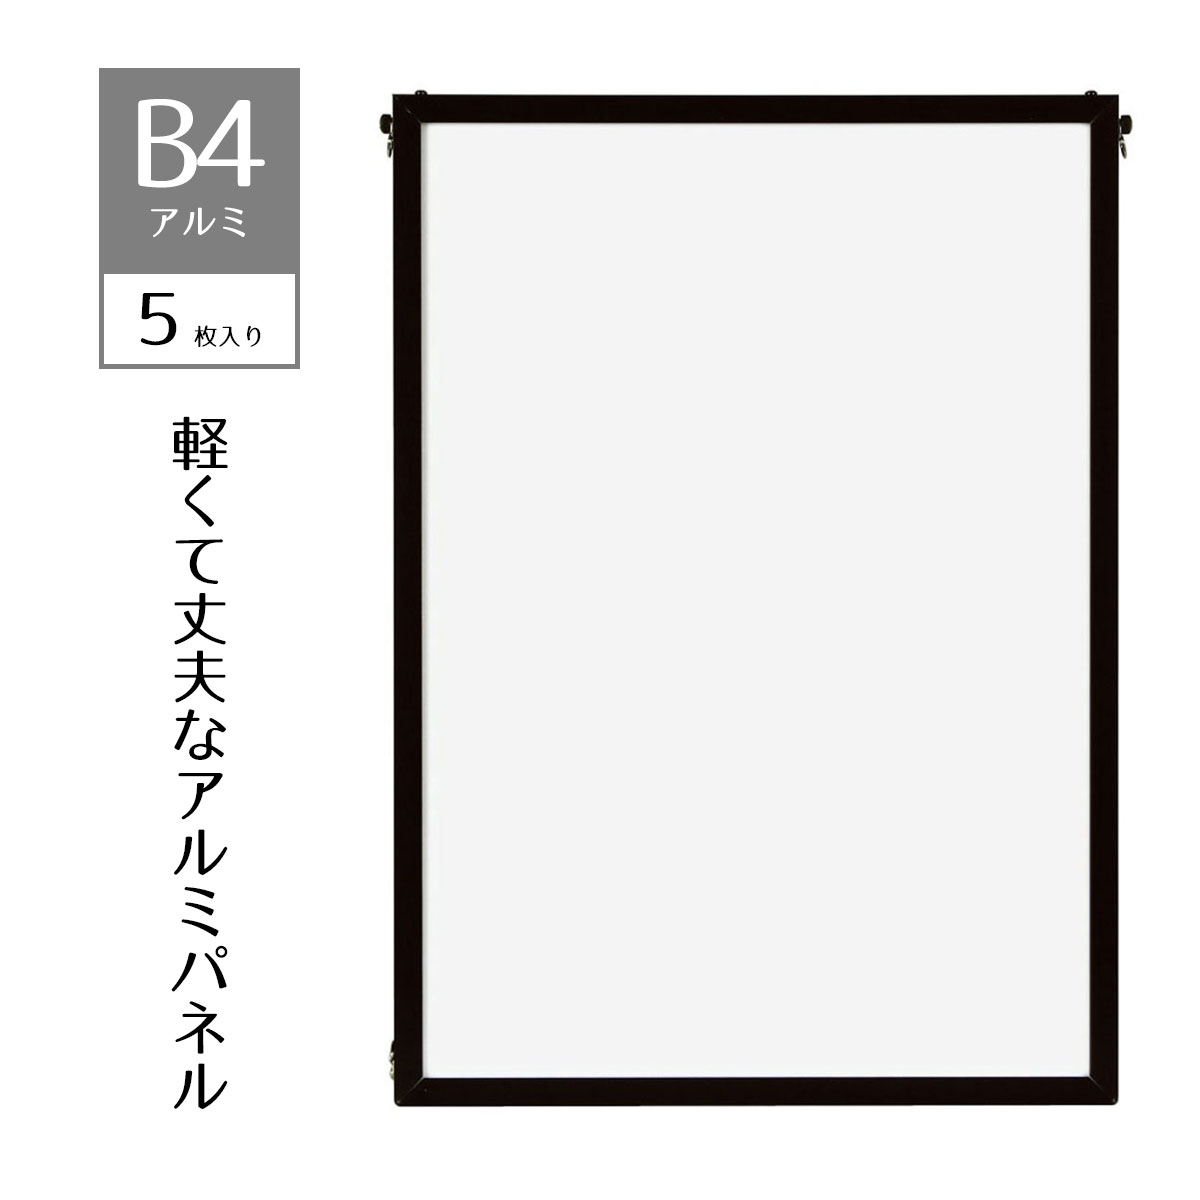 【5枚入り】ベストアルミパネル 黒 B4ポスター・写真・ポップなど幅広く利用できる、軽くて丈夫なアル..